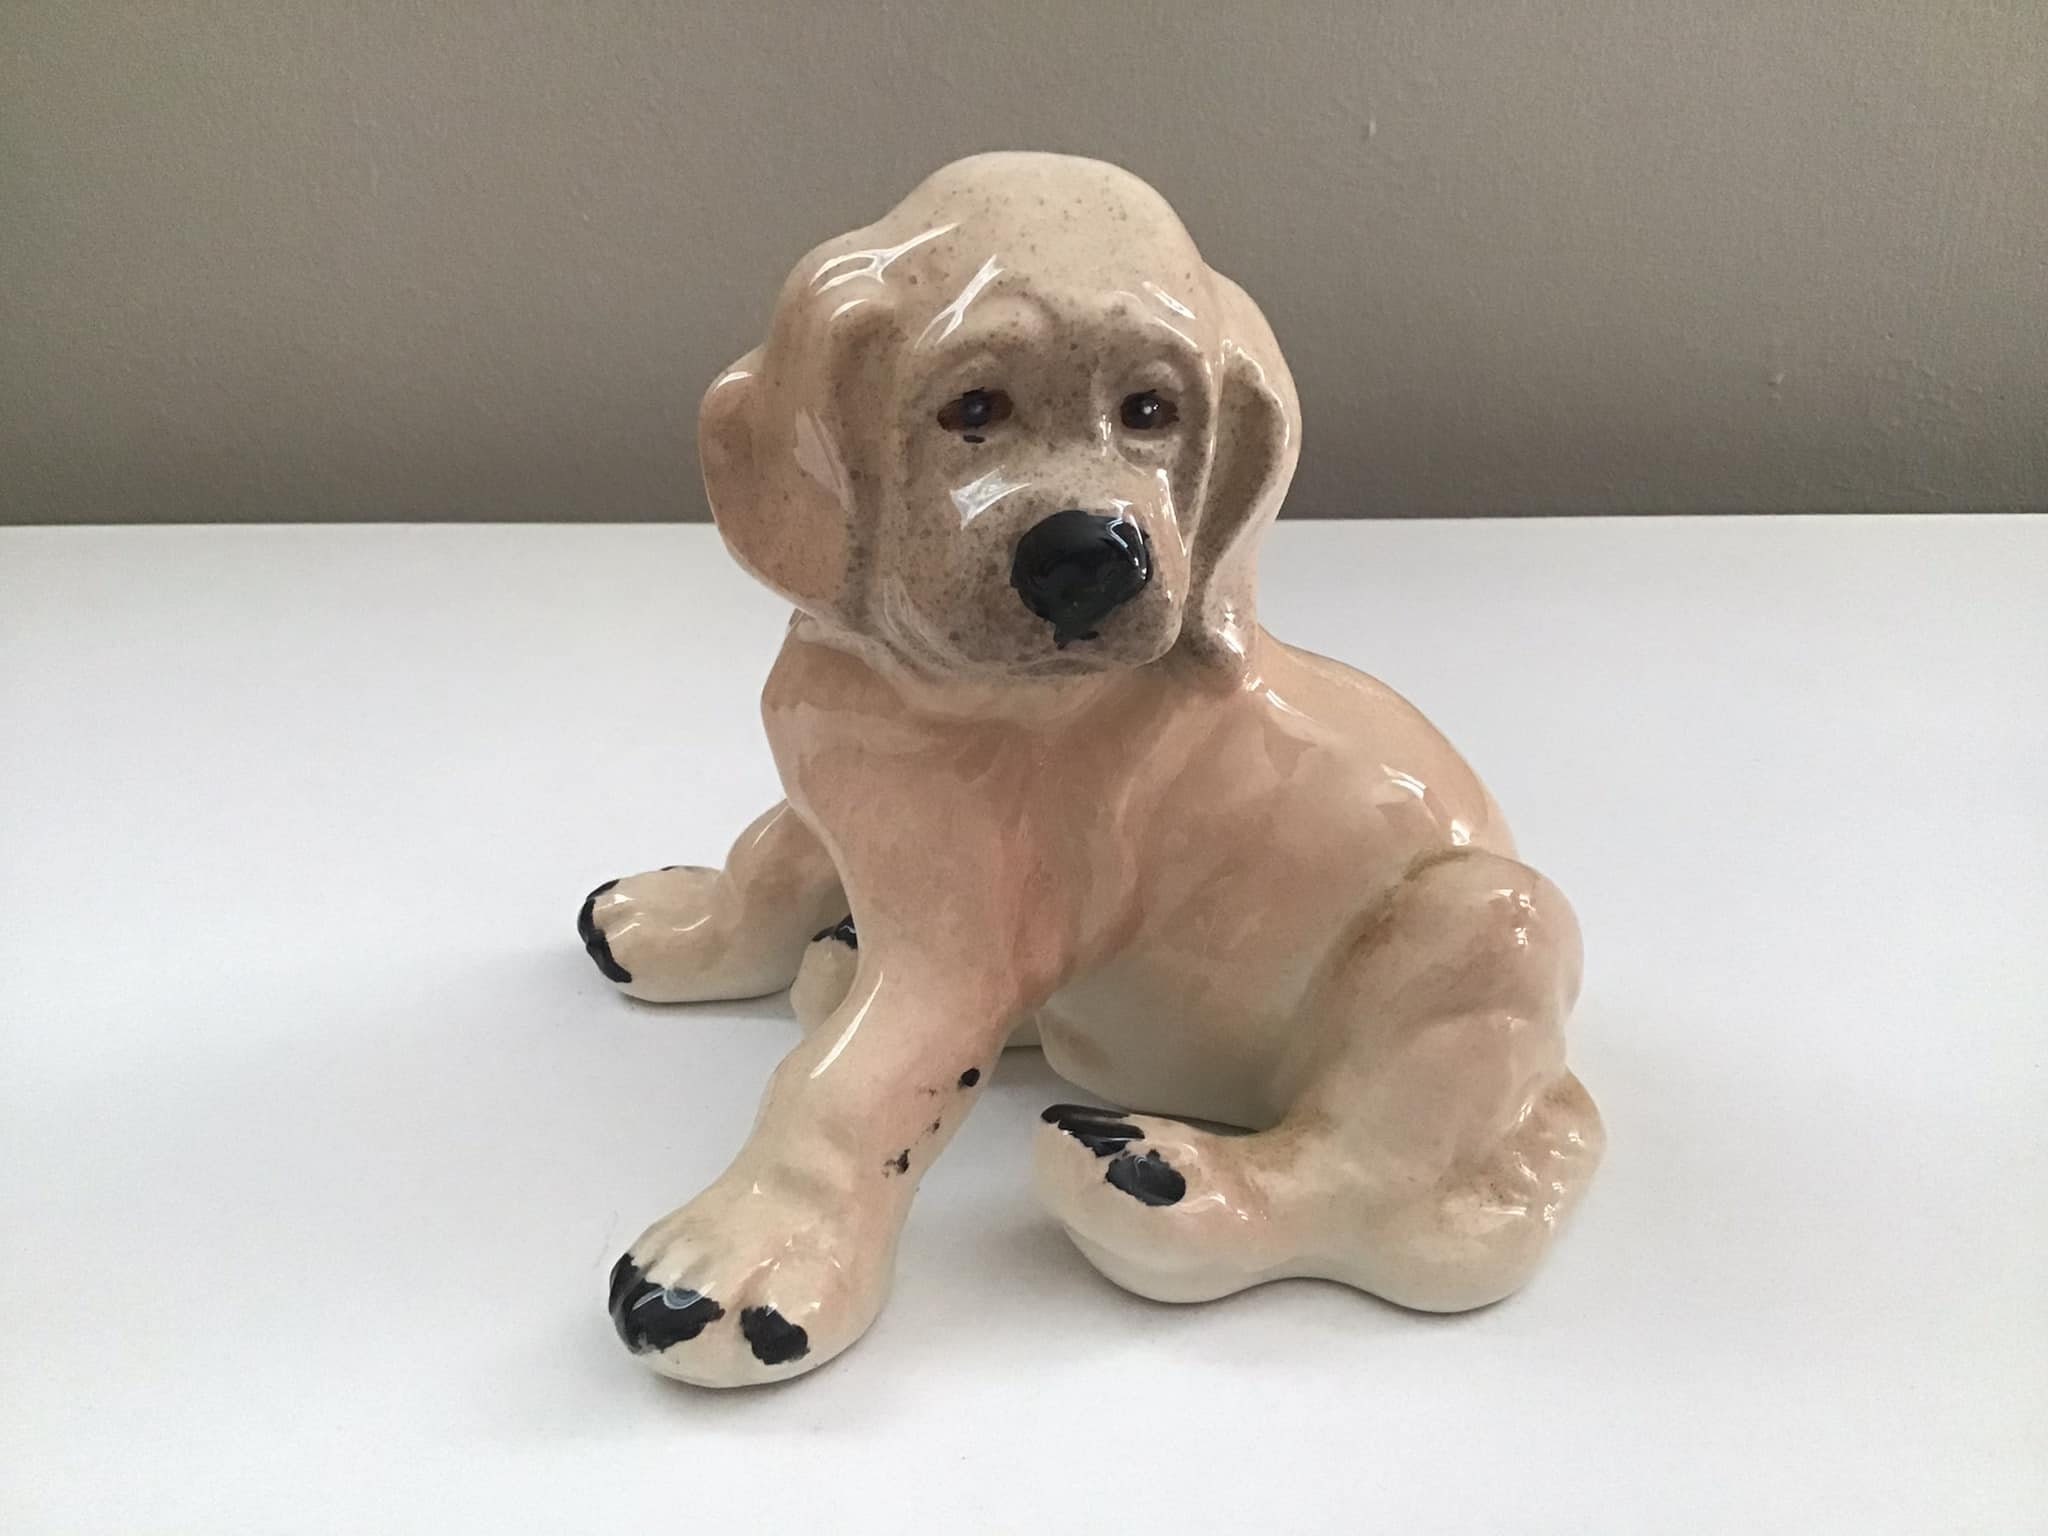 Vintage Dog Figurine Vintage Dog Collectible Hand-Painted Labrador Dog Figurine Made in Japan Labrador Porcelain Dog Statue